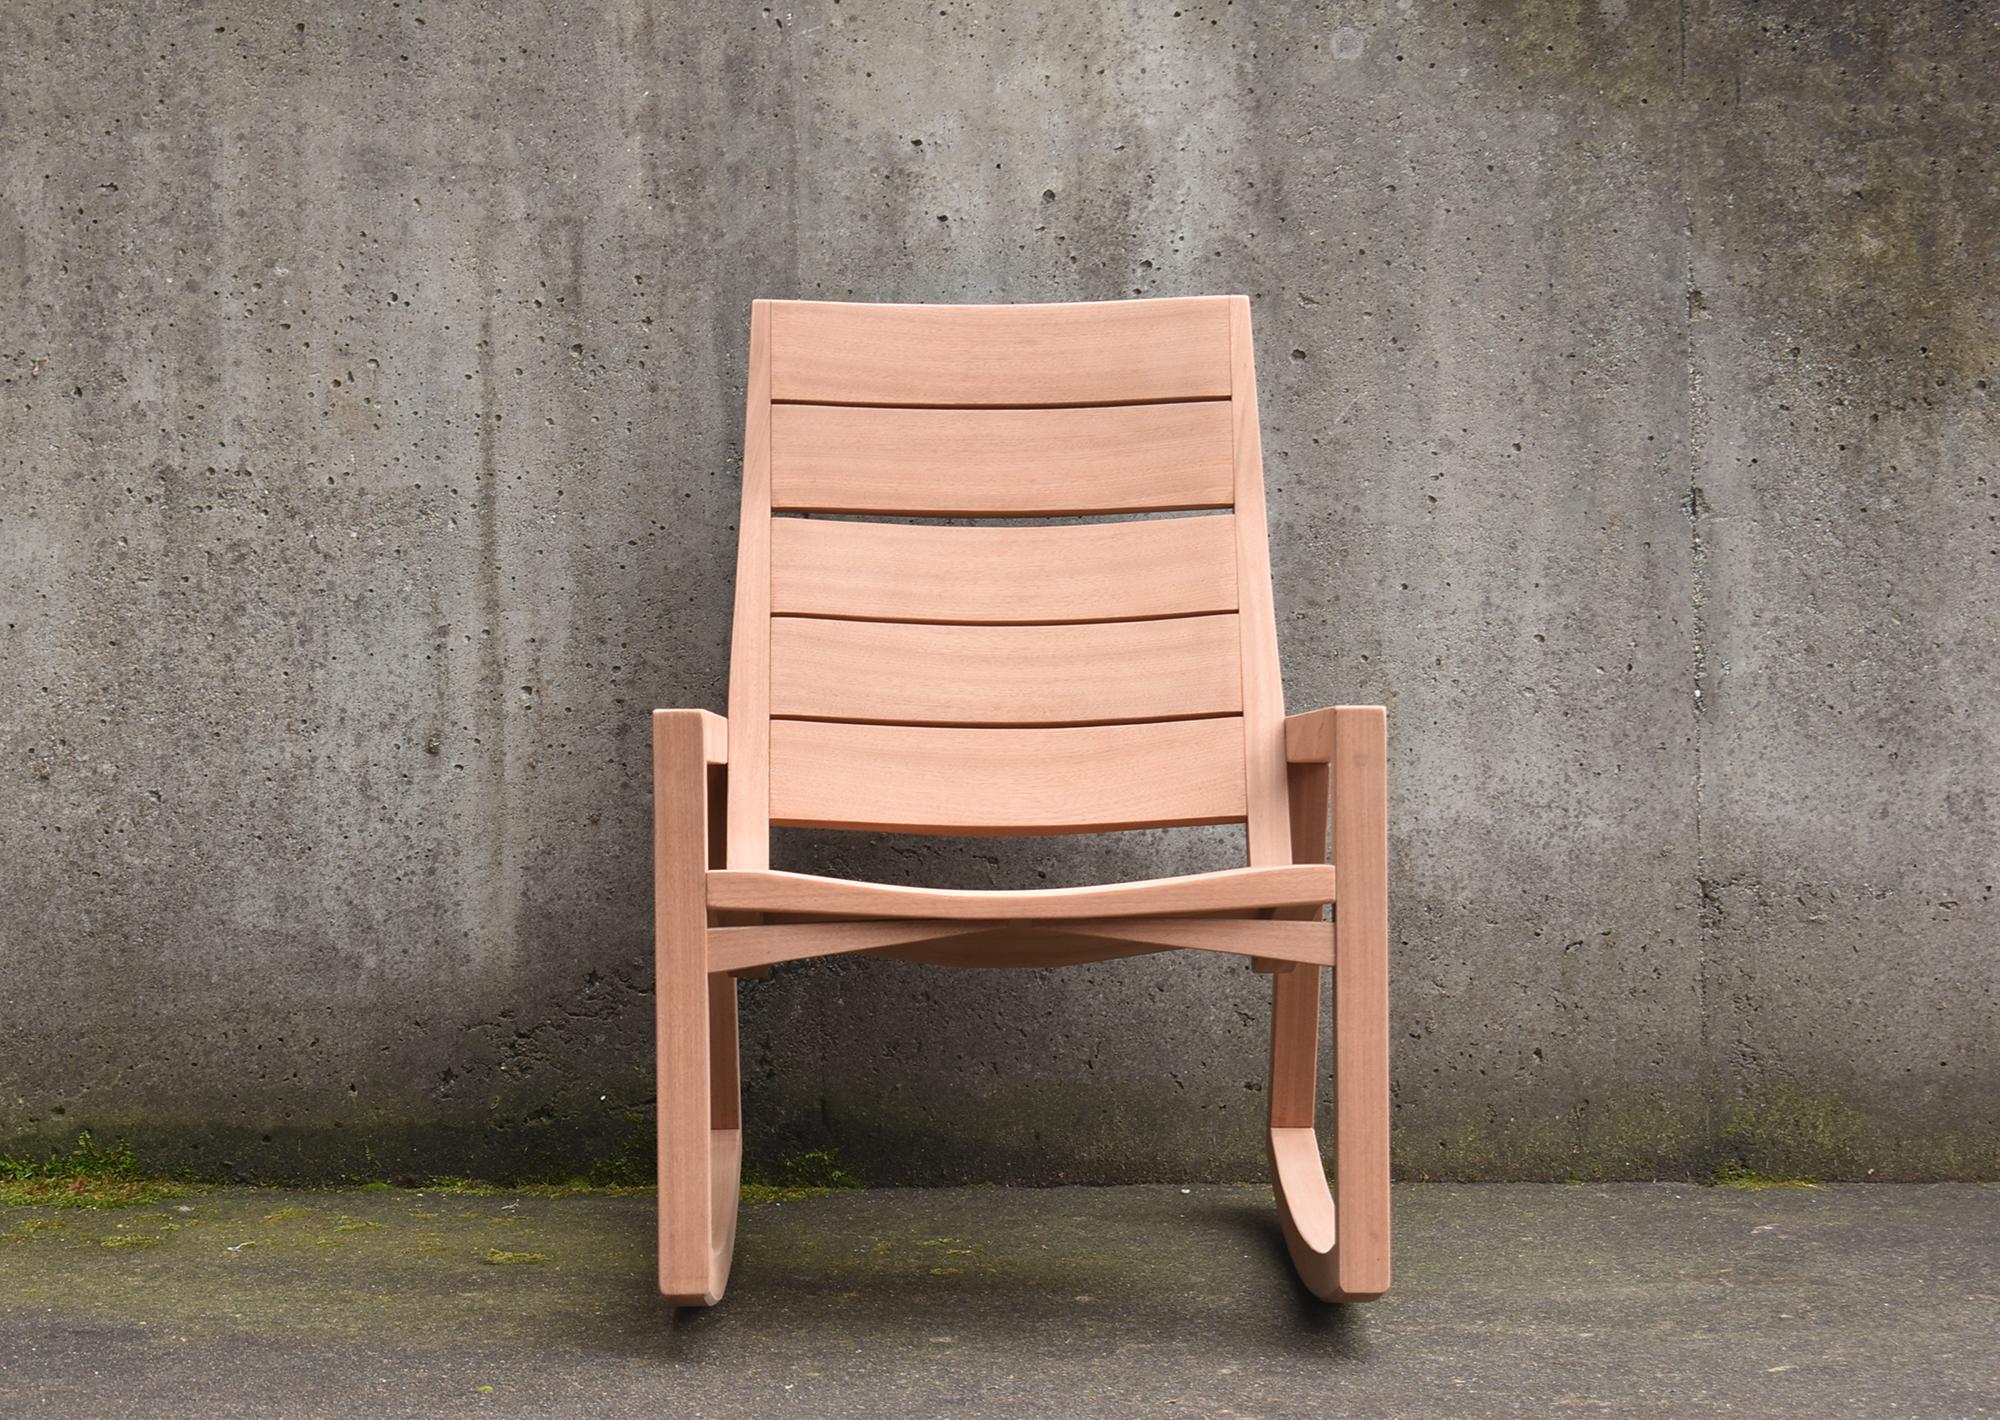 Moderner Schaukelstuhl für den Außenbereich, der für traditionelle/traditionelle und moderne/zeitgenössische Außenbereiche wie Terrassen, Veranden und Pools geeignet ist. 

Durch die Verwendung von Schlitz- und Zapfenverbindungen ist dieser Stuhl